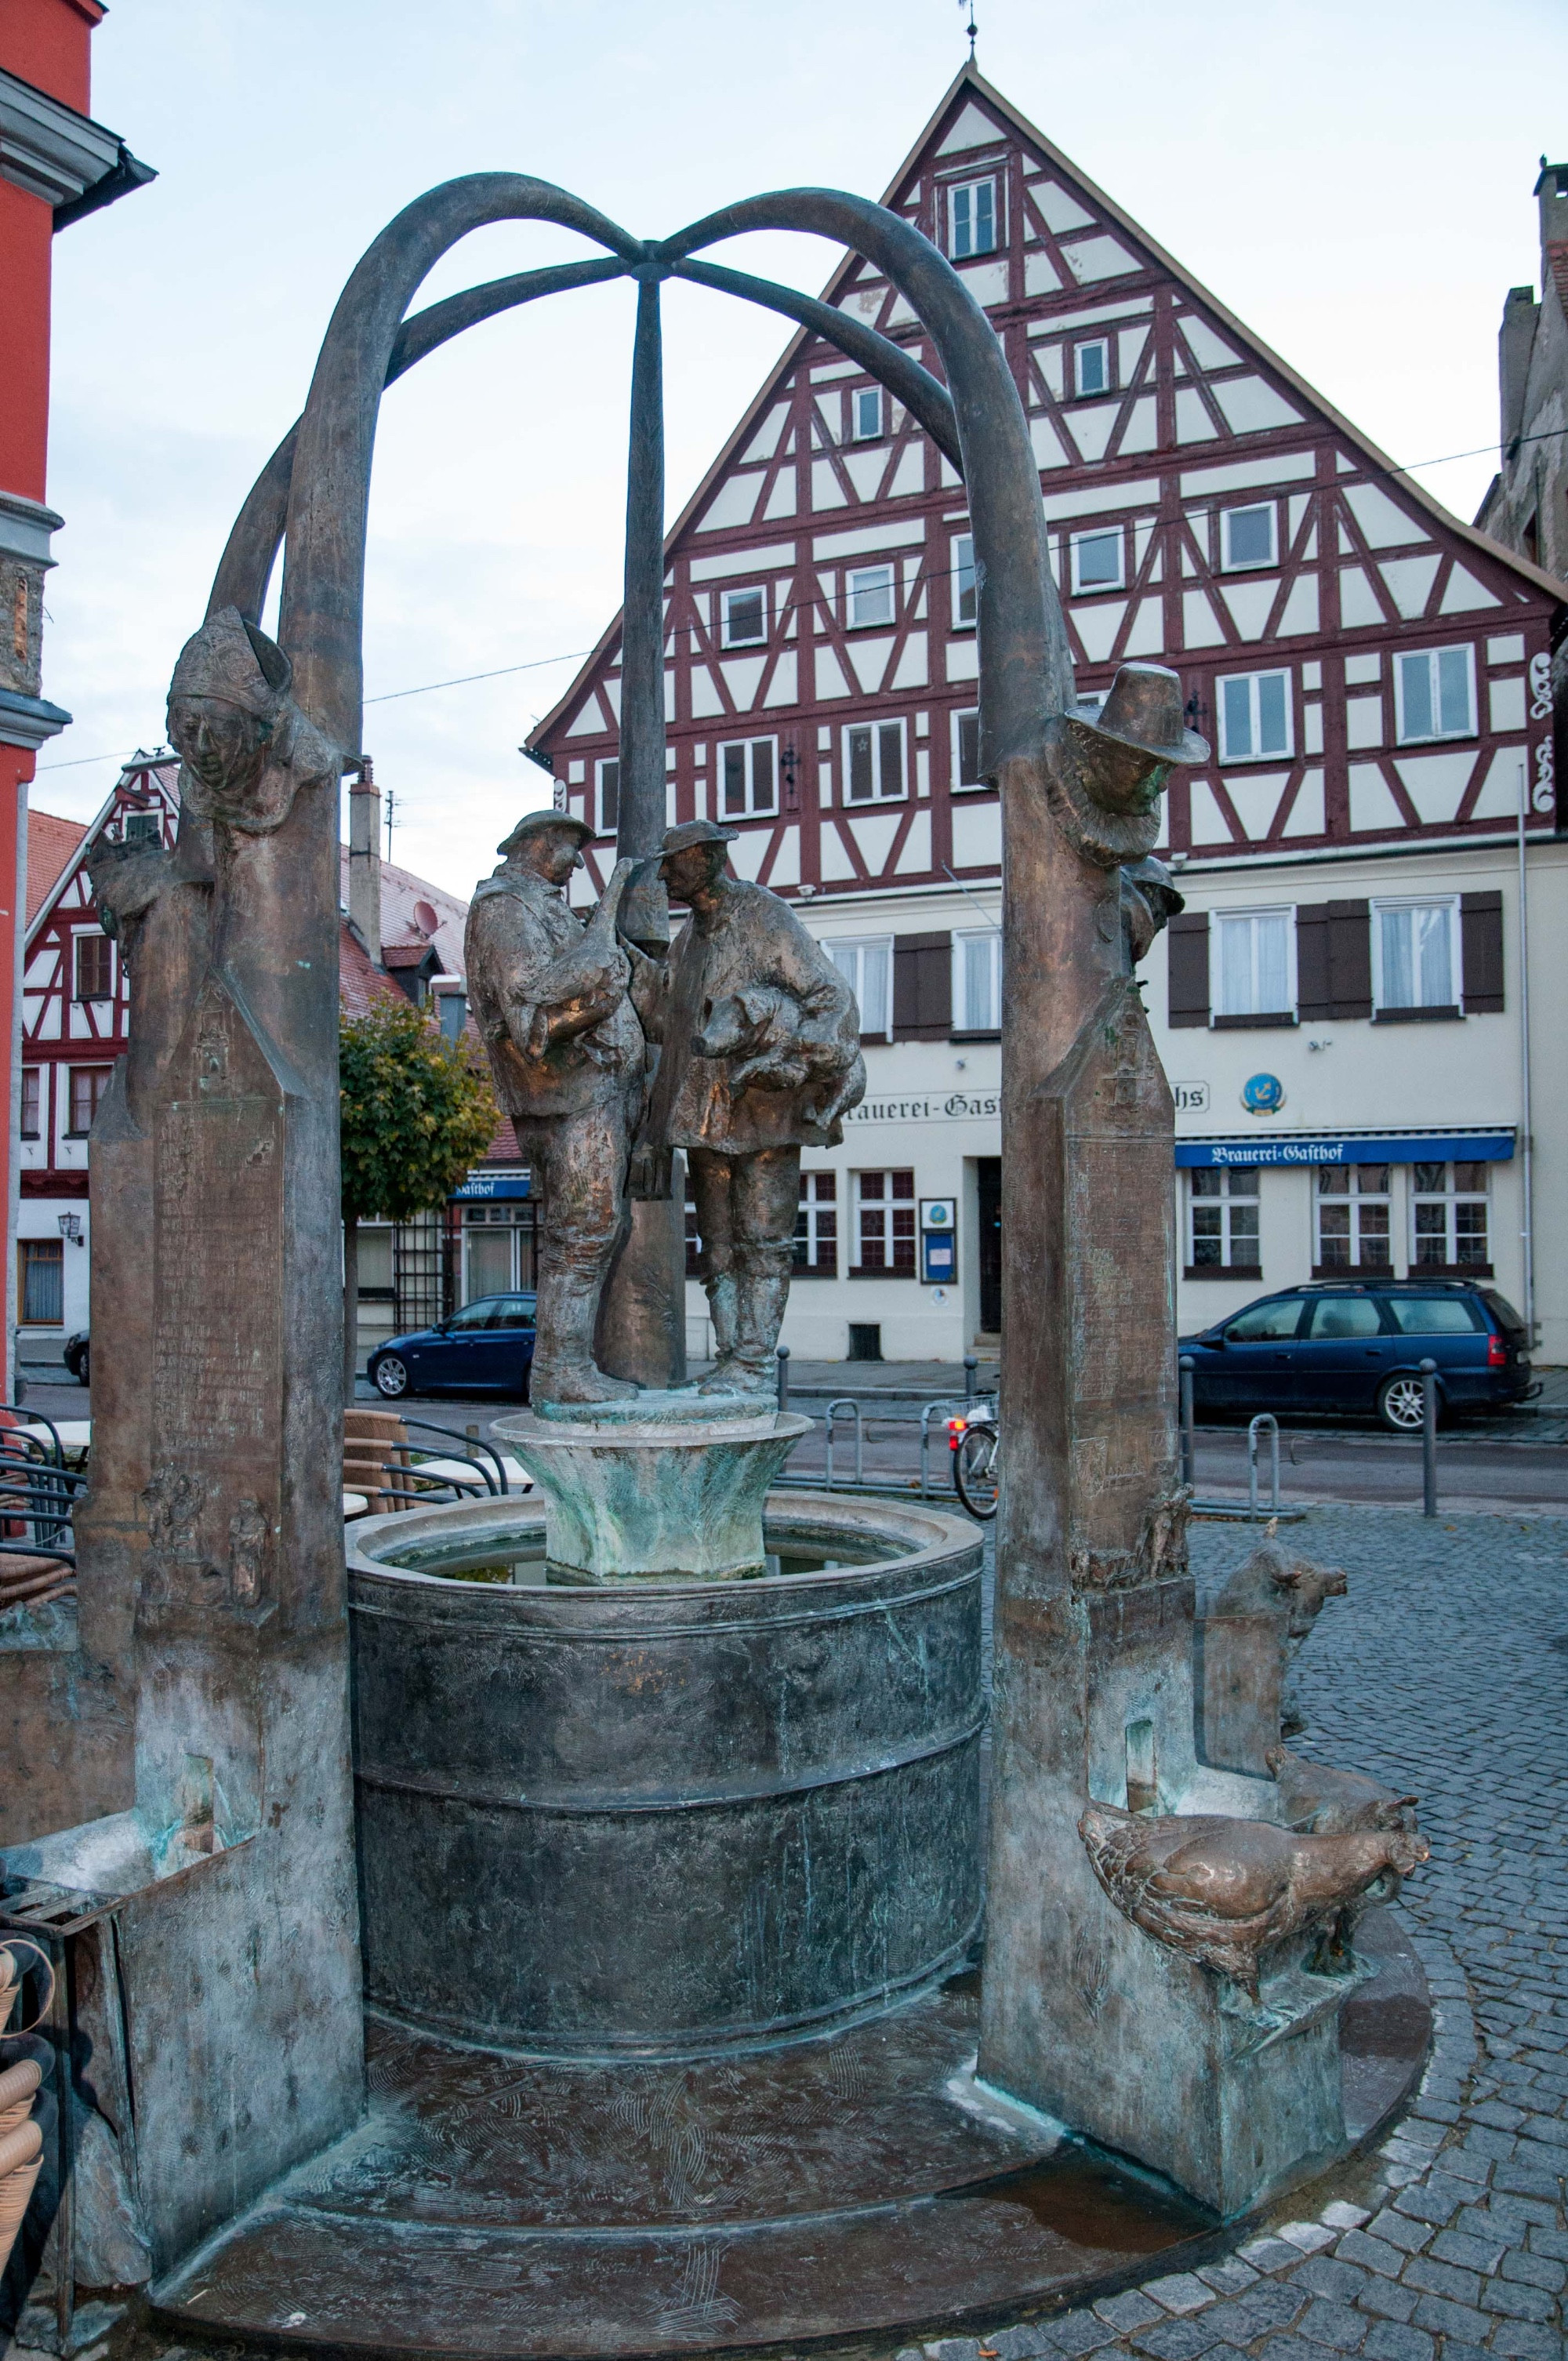 Marktbrunnen, Germany